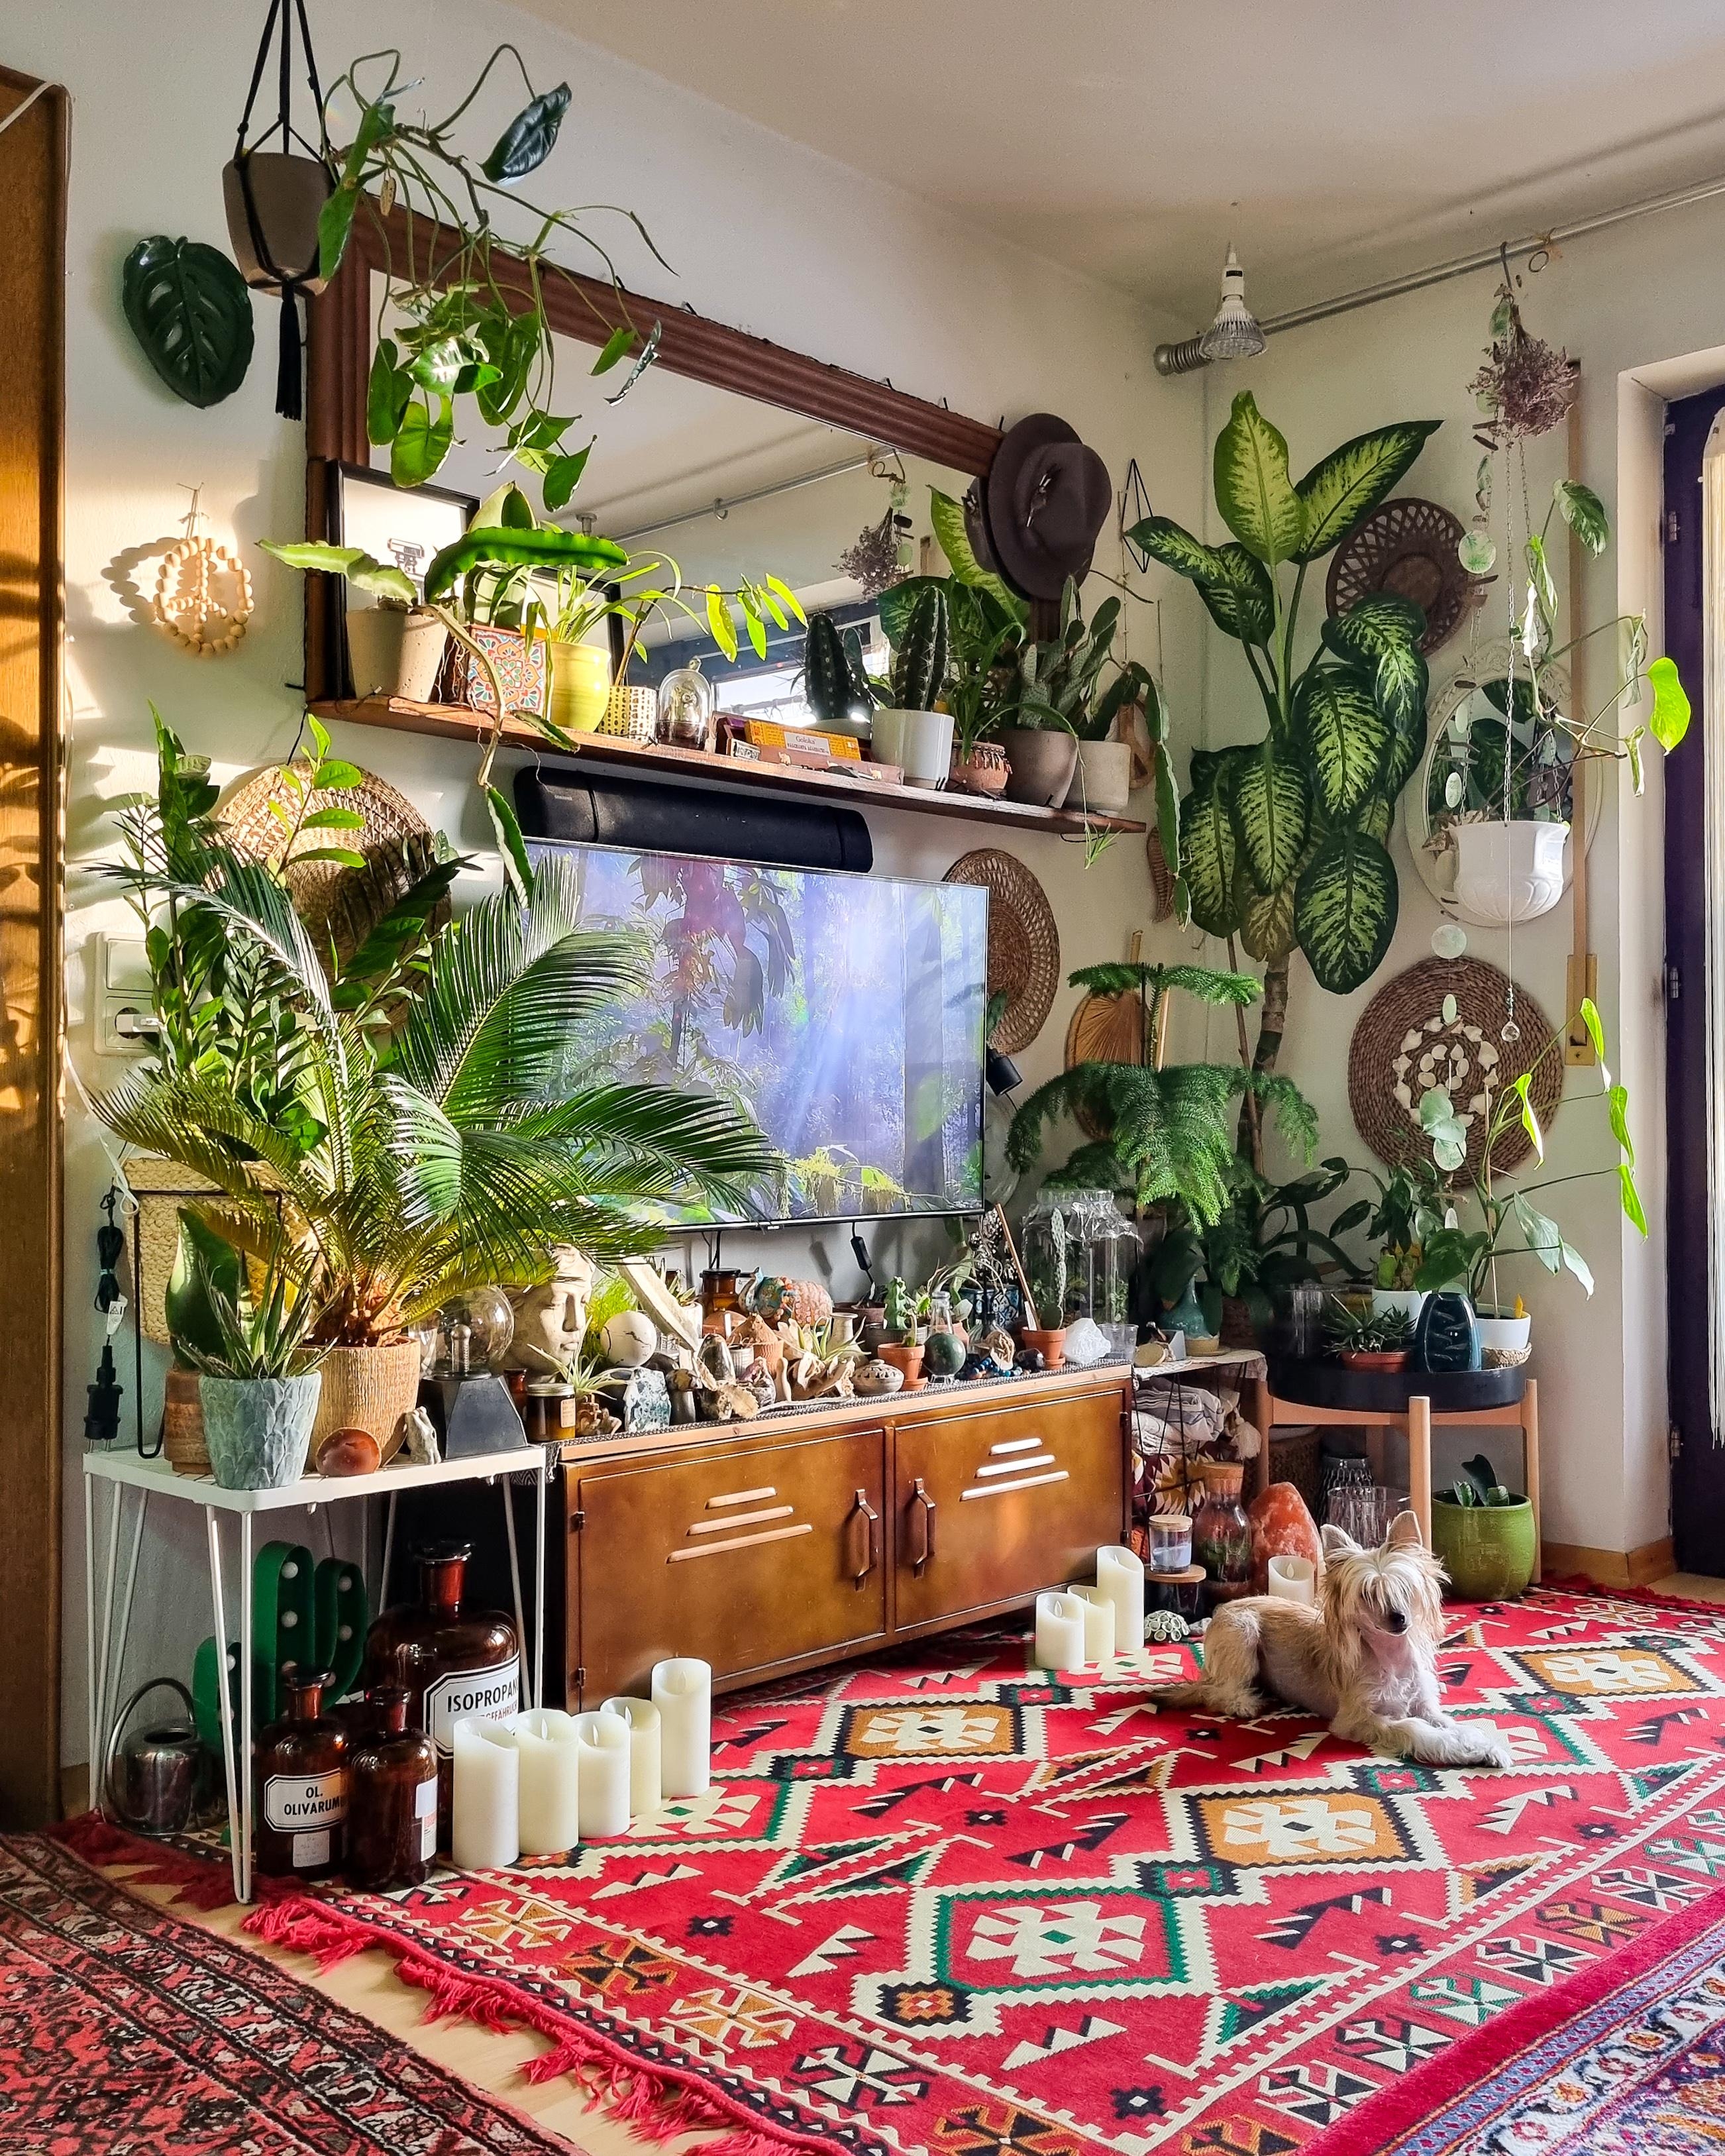 Schönen Nachmittag ✨️ #Wohnung #wohnzimmer #Pflanzen #Spiegel #urbanjungle #Kerzen #Teppich #boho #hippie 